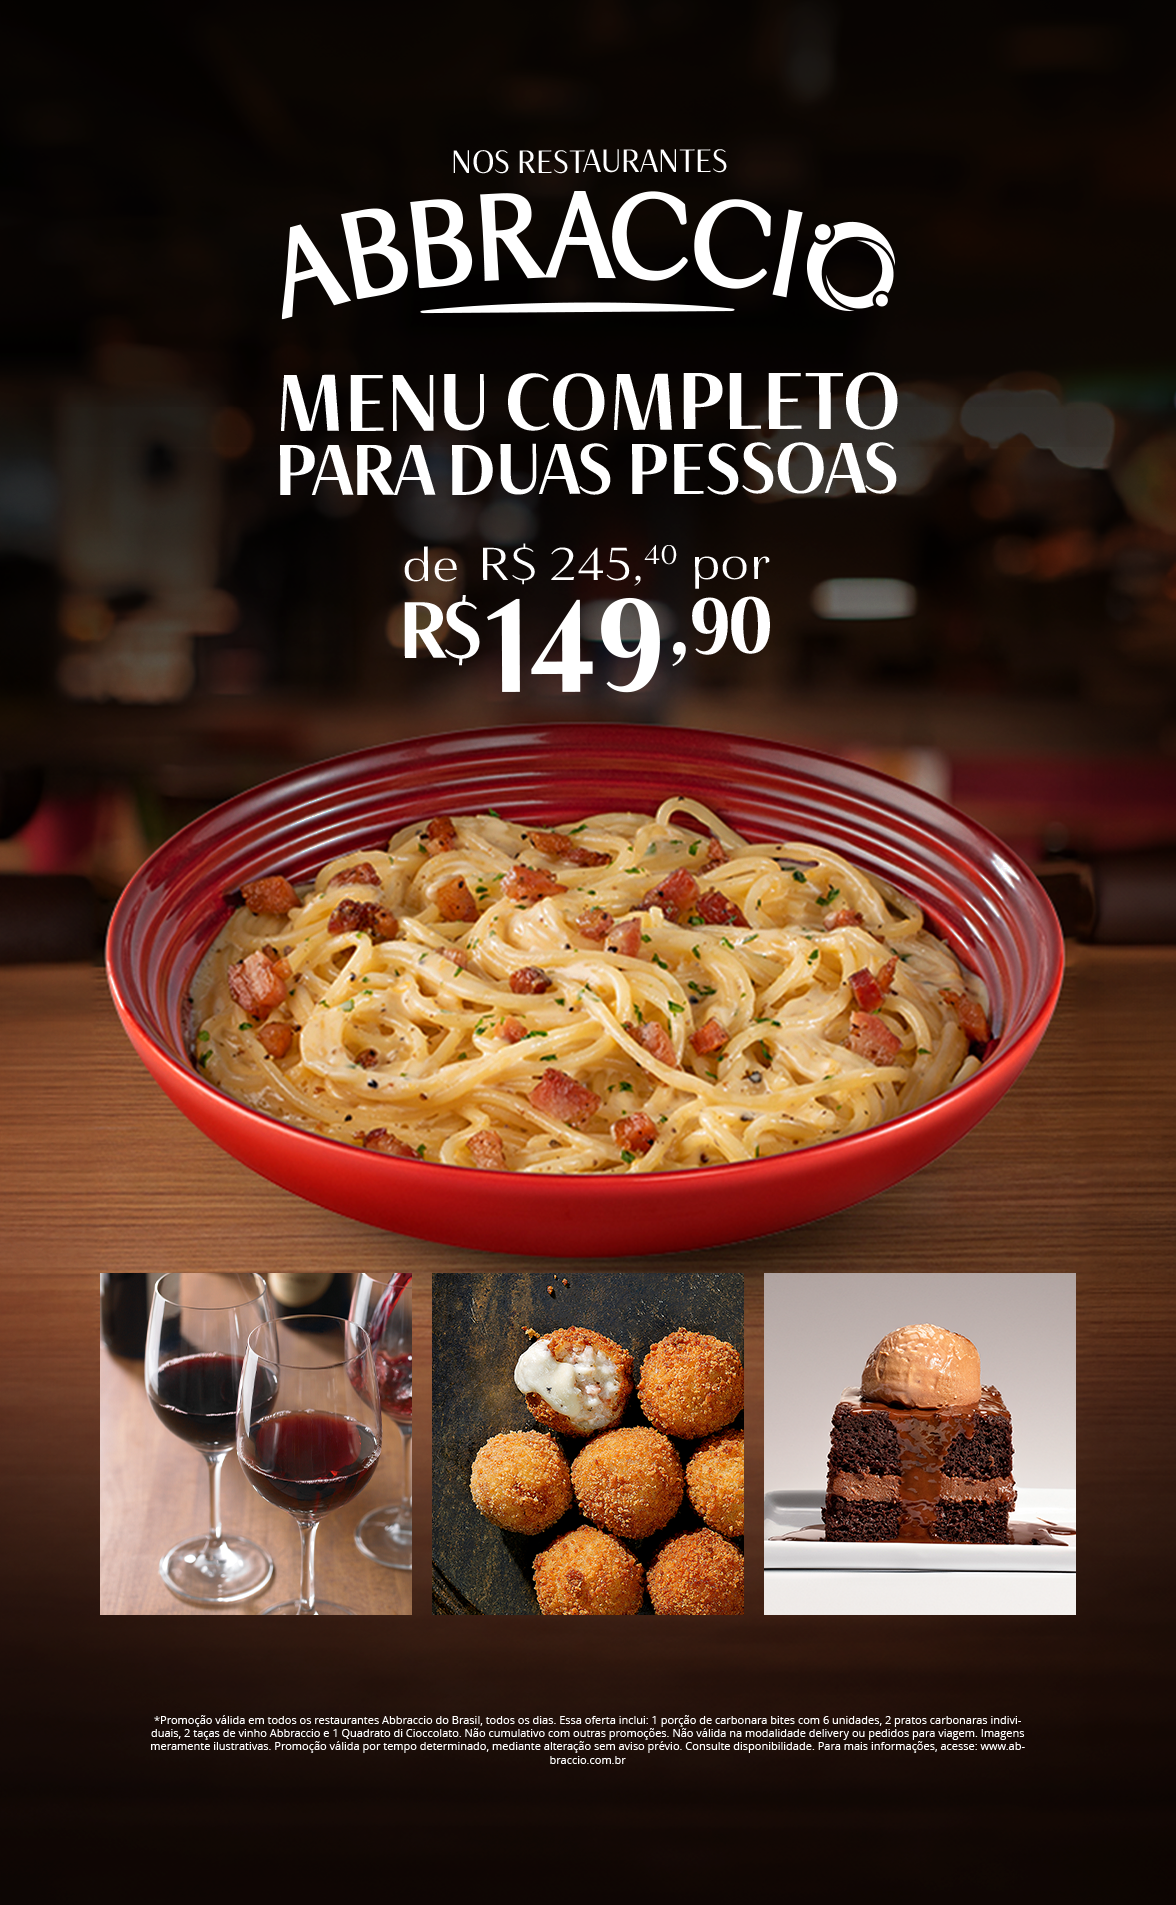 Abbraccio lança menu completo para duas pessoas R$149,90